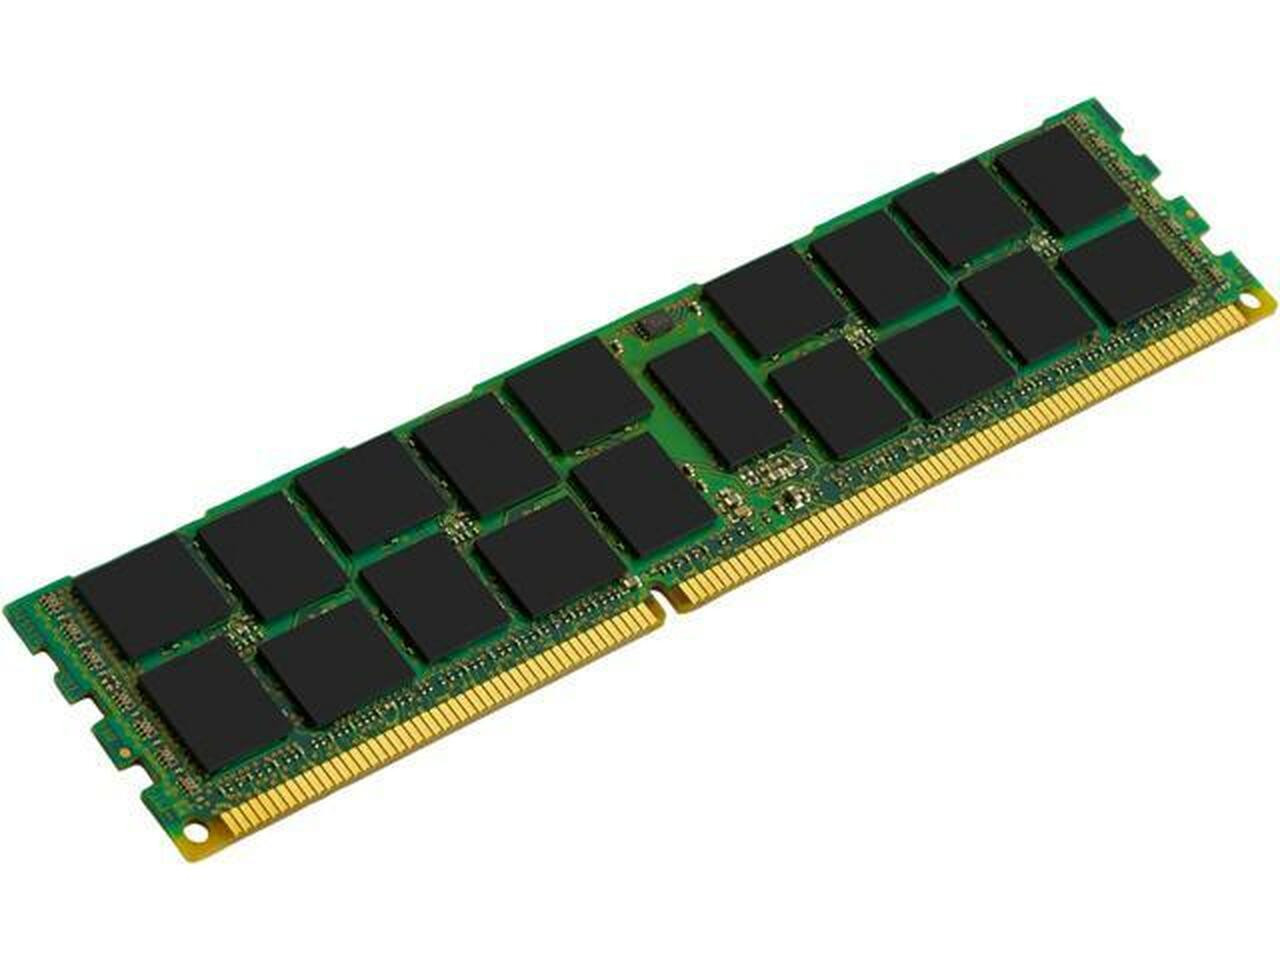 Netpatibles 32GB DDR4 SDRAM Memory Module - MEMDR432LHL01ER32NPM